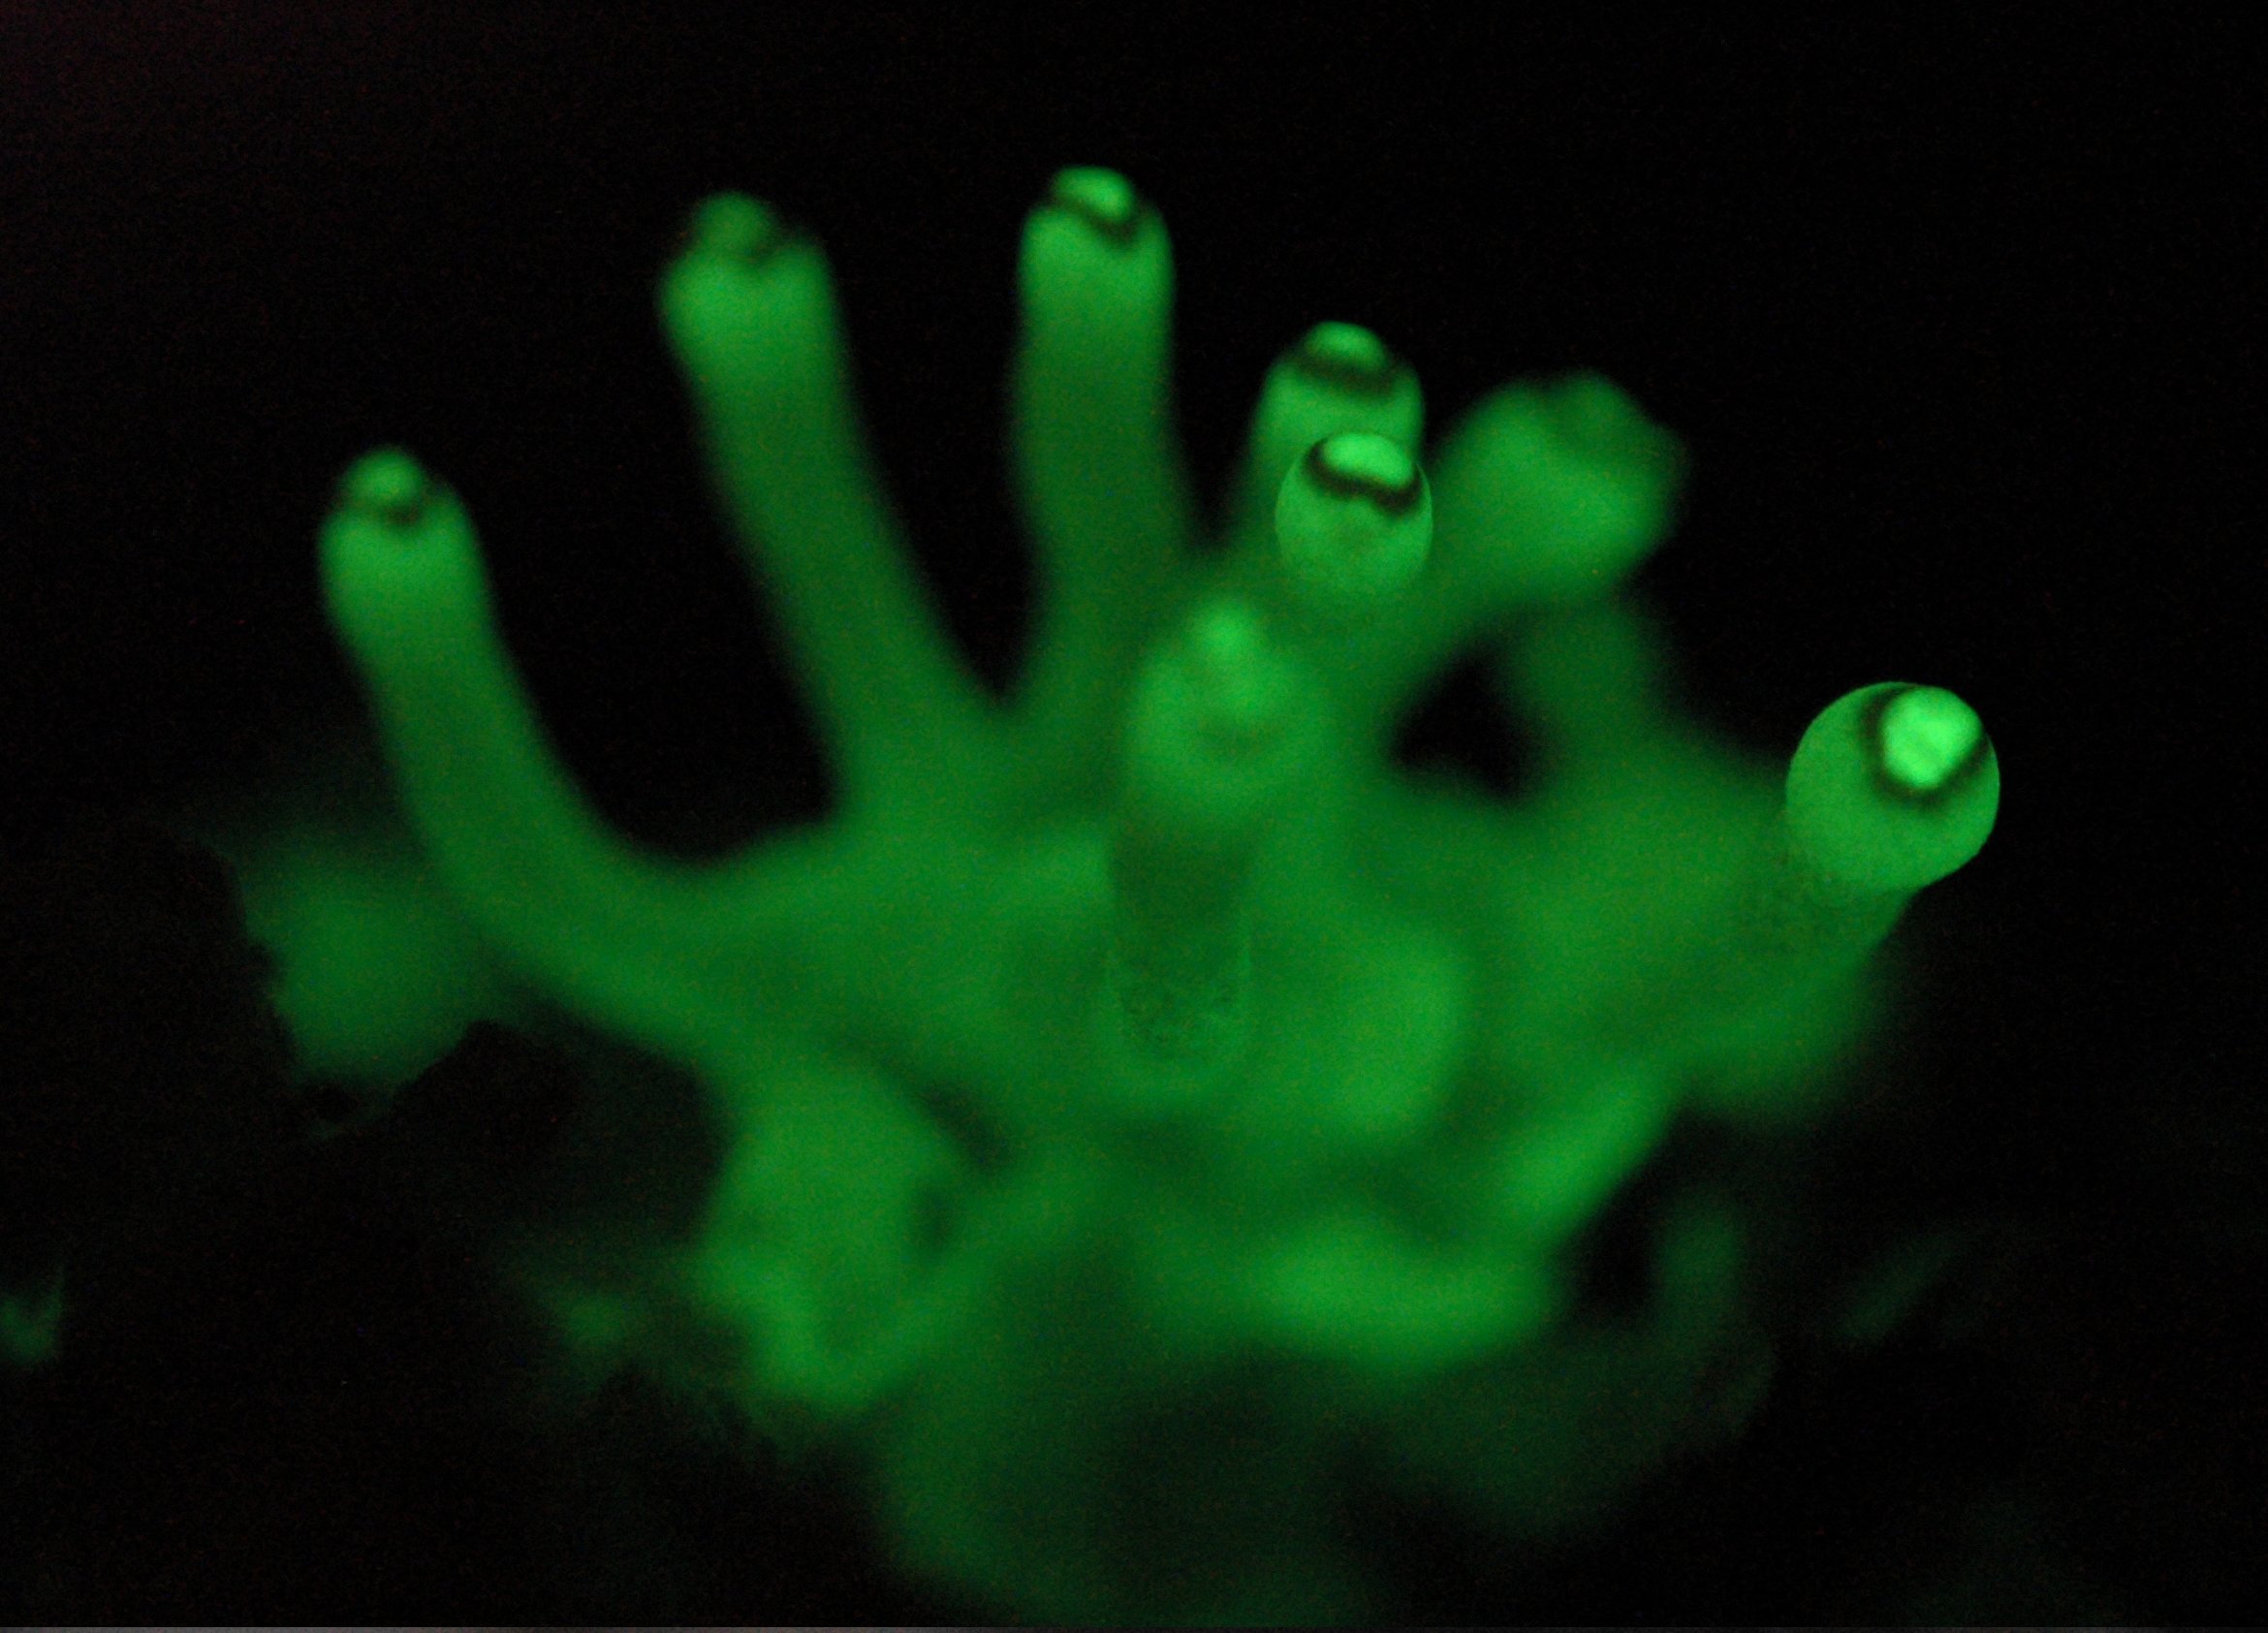 Foxfire Fungus - Glowing primordia of Panellus stictipus